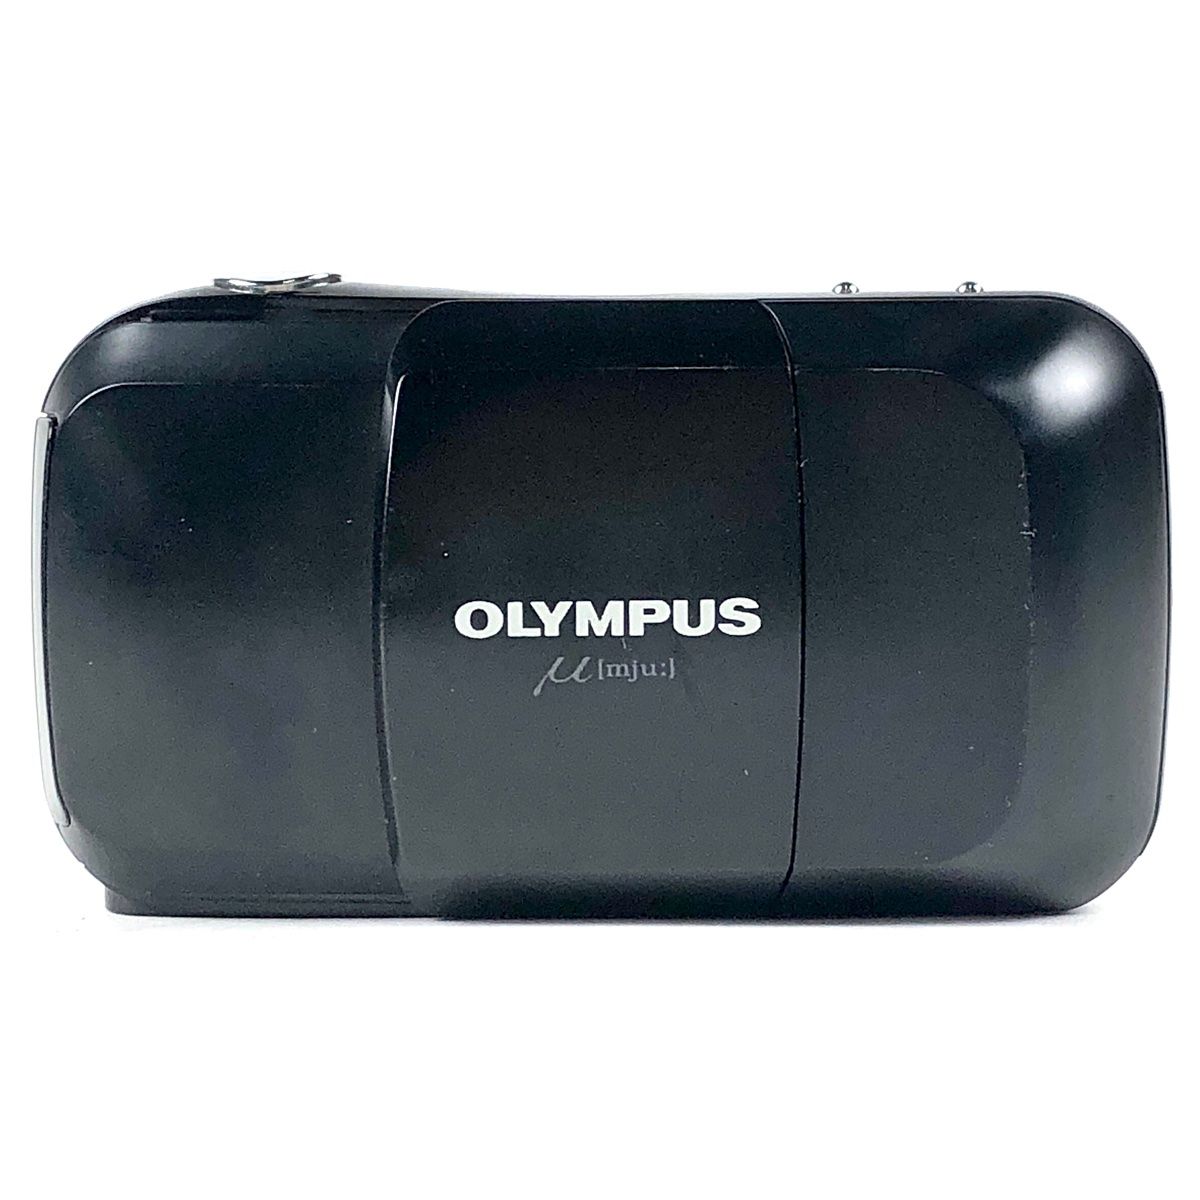 オリンパス OLYMPUS μ [mju:] ミュー ブラック 35mm F3.5 フィルム コンパクトカメラ 【中古】